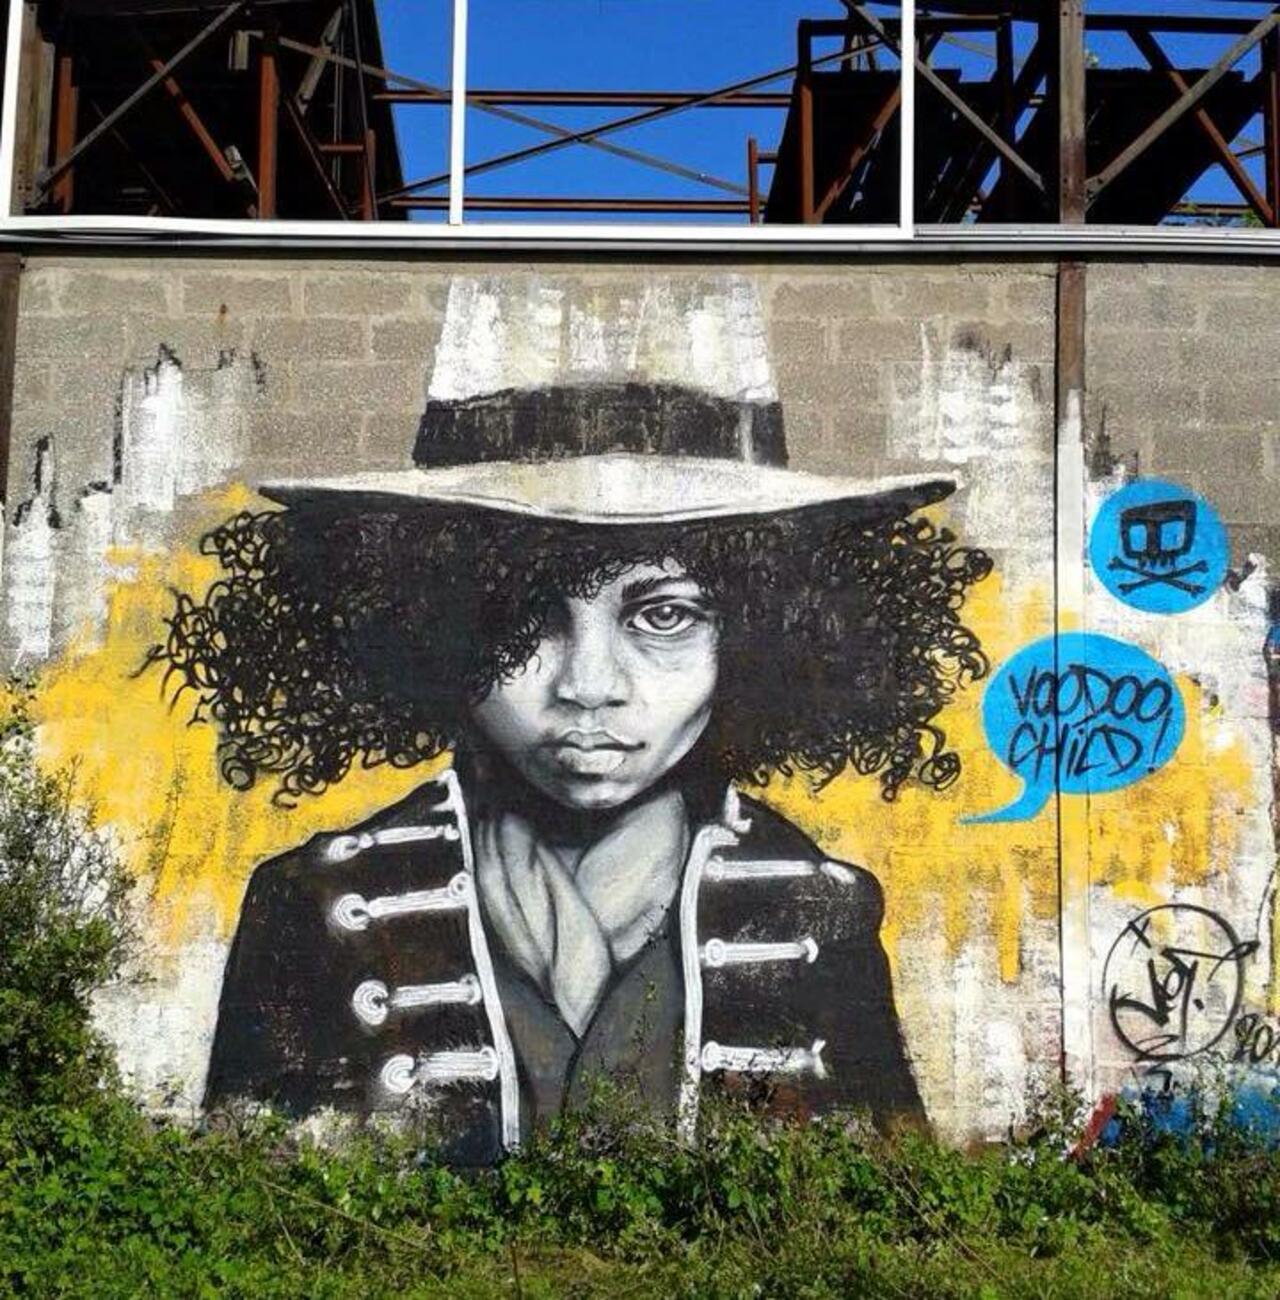 RT ArchaicManor "Street Art portrait by Jef 

#art #arte #graffiti #streetart http://t.co/DN3zzEF6YE yo"